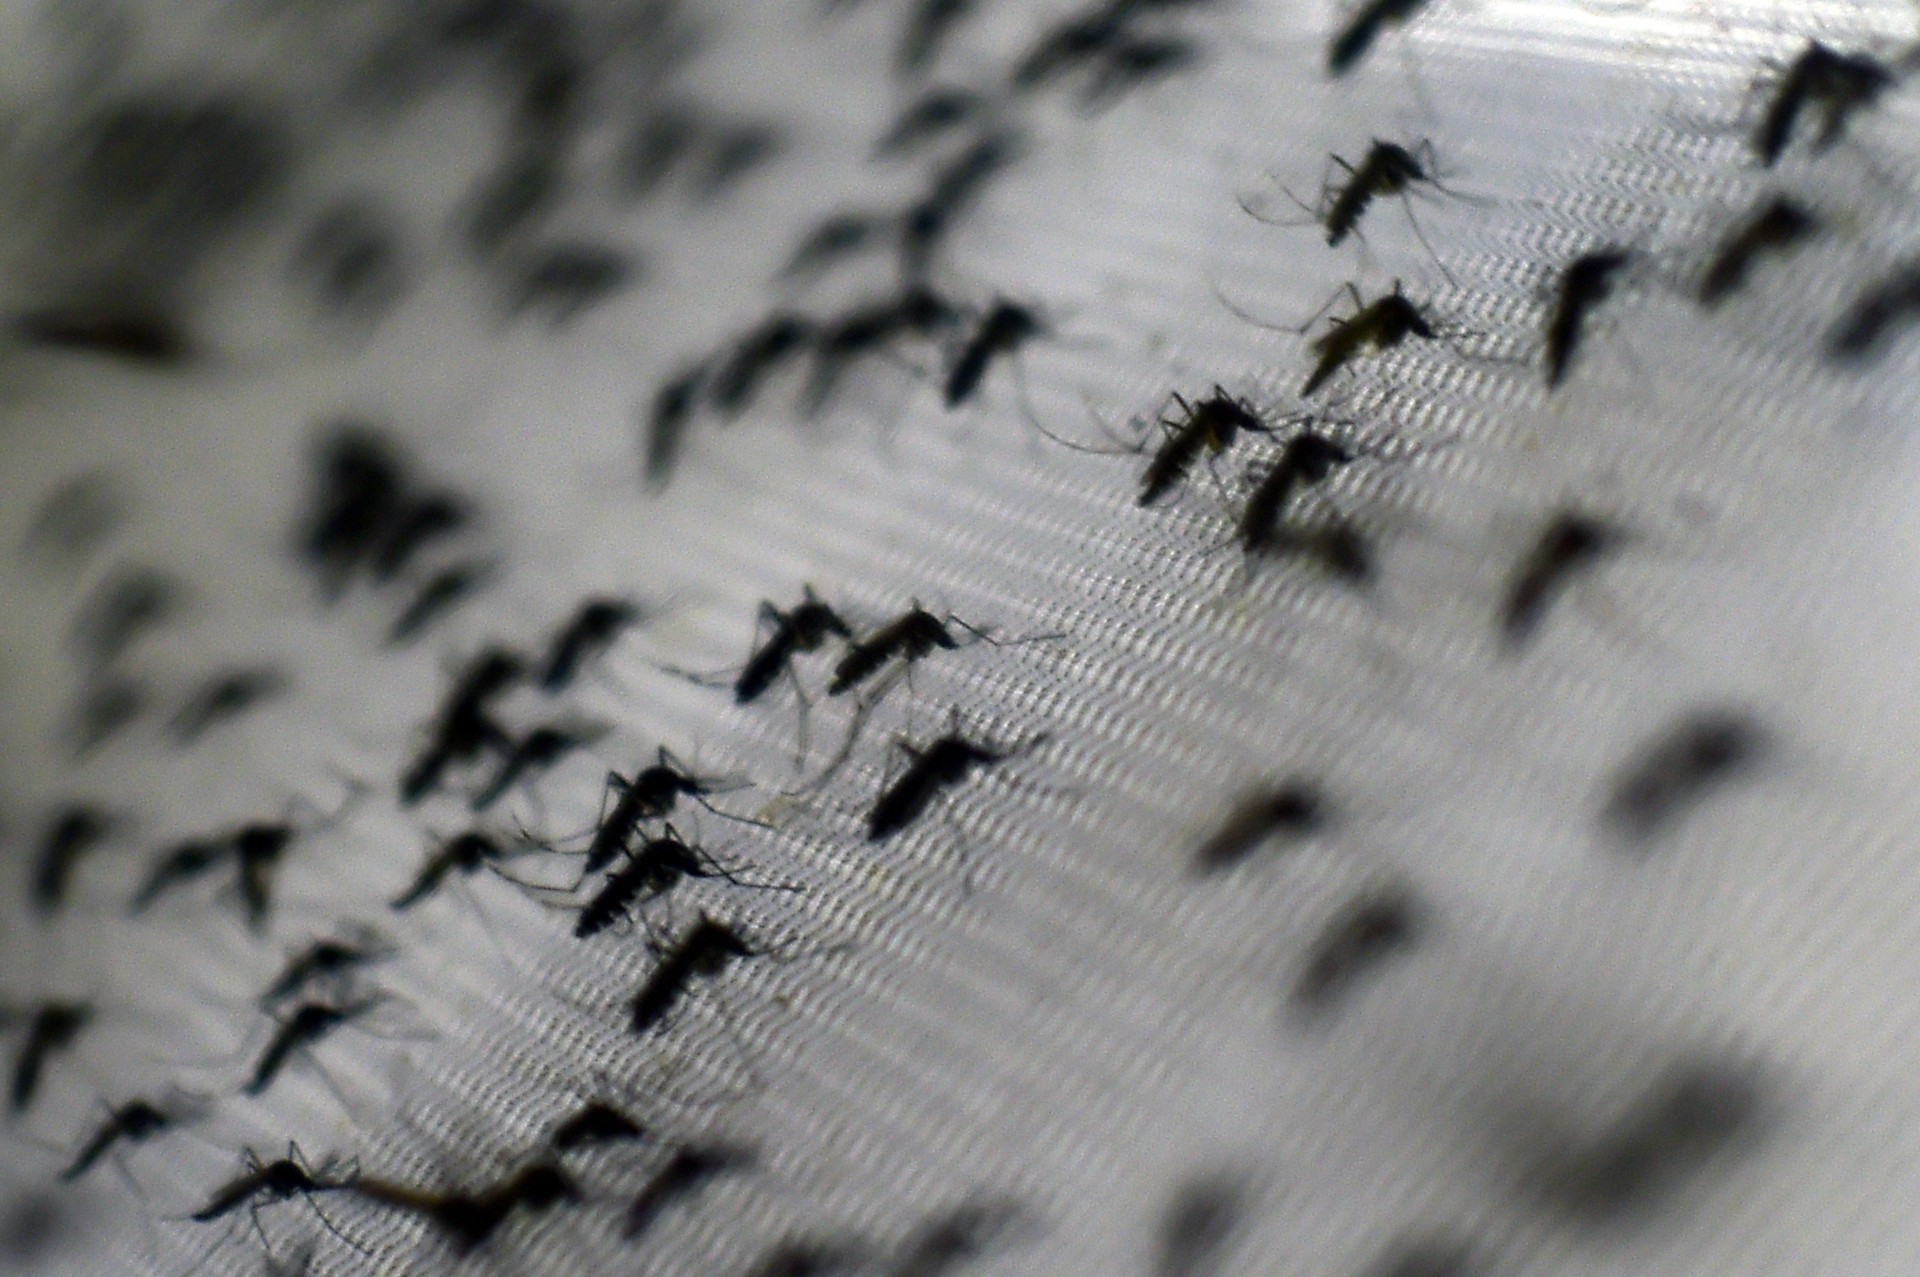 Austrália confirma segundo caso de grávida com o vírus Zika no país